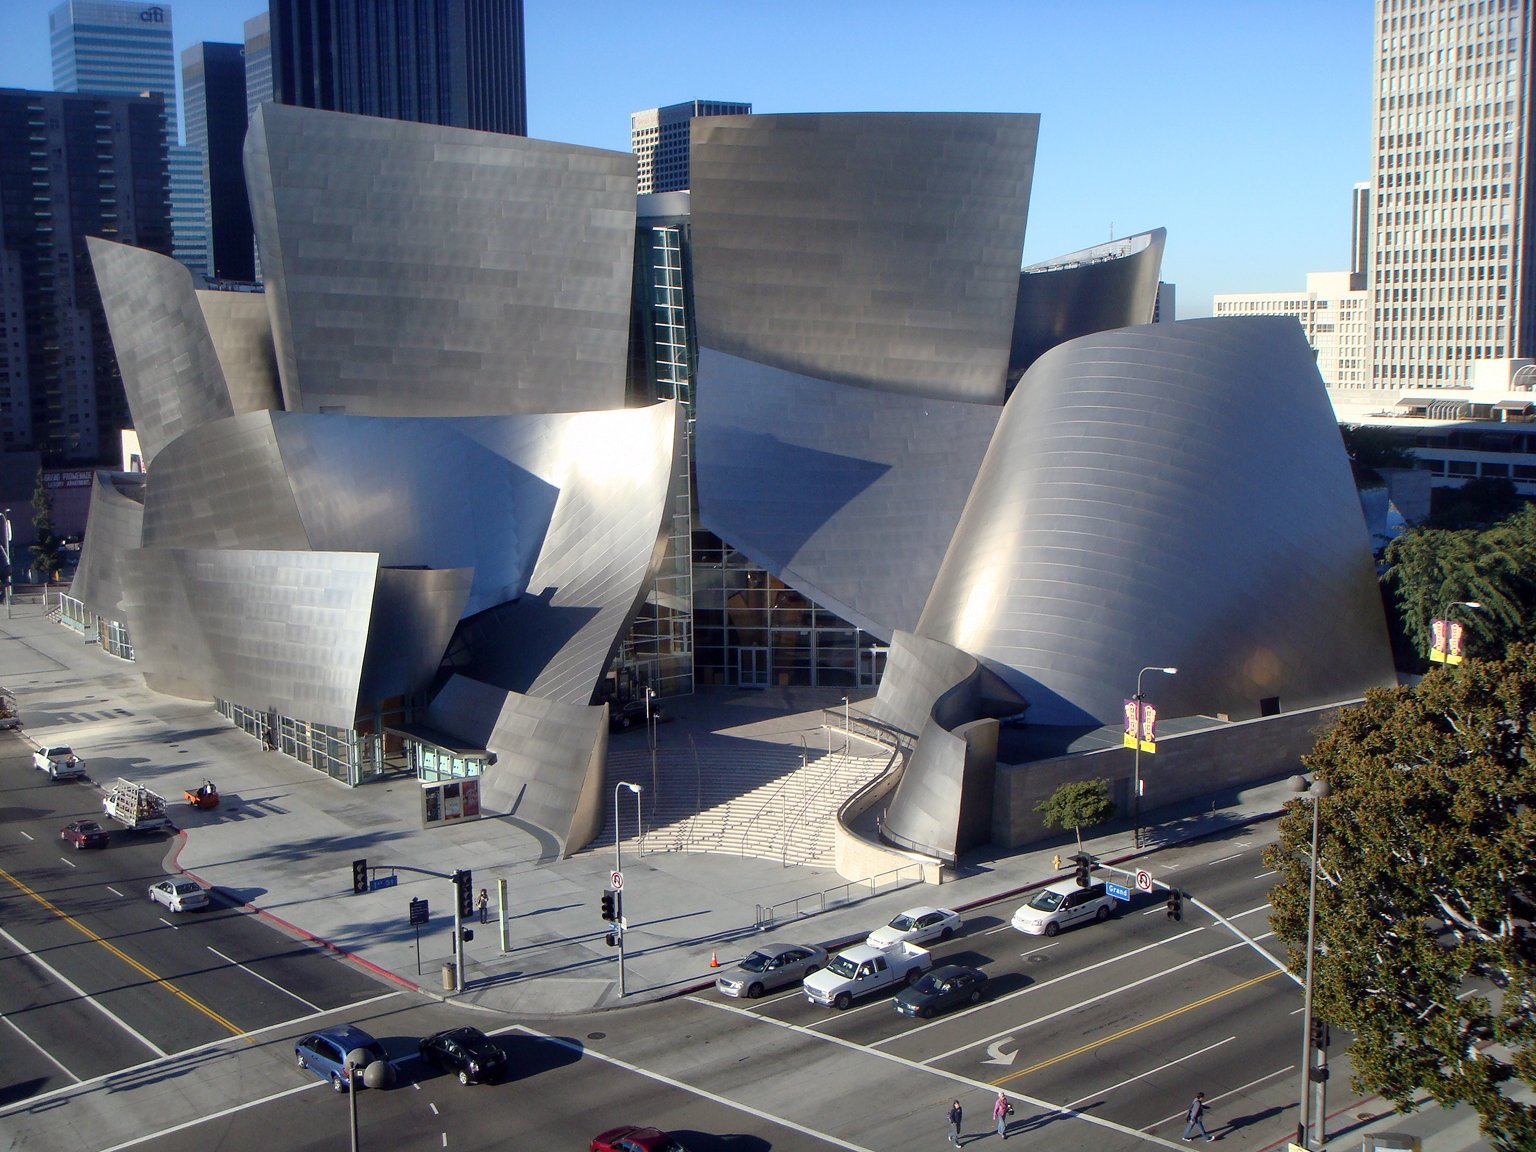 Зал уолта диснея. Концертный зал имени Уолта Диснея в Лос-Анджелесе. Лос Анджелес концертный зал Уолта Диснея. Фрэнк Гери концертный зал Уолта Диснея. Концертный зал имени Уолта Диснея в Лос-Анджелесе (2003).